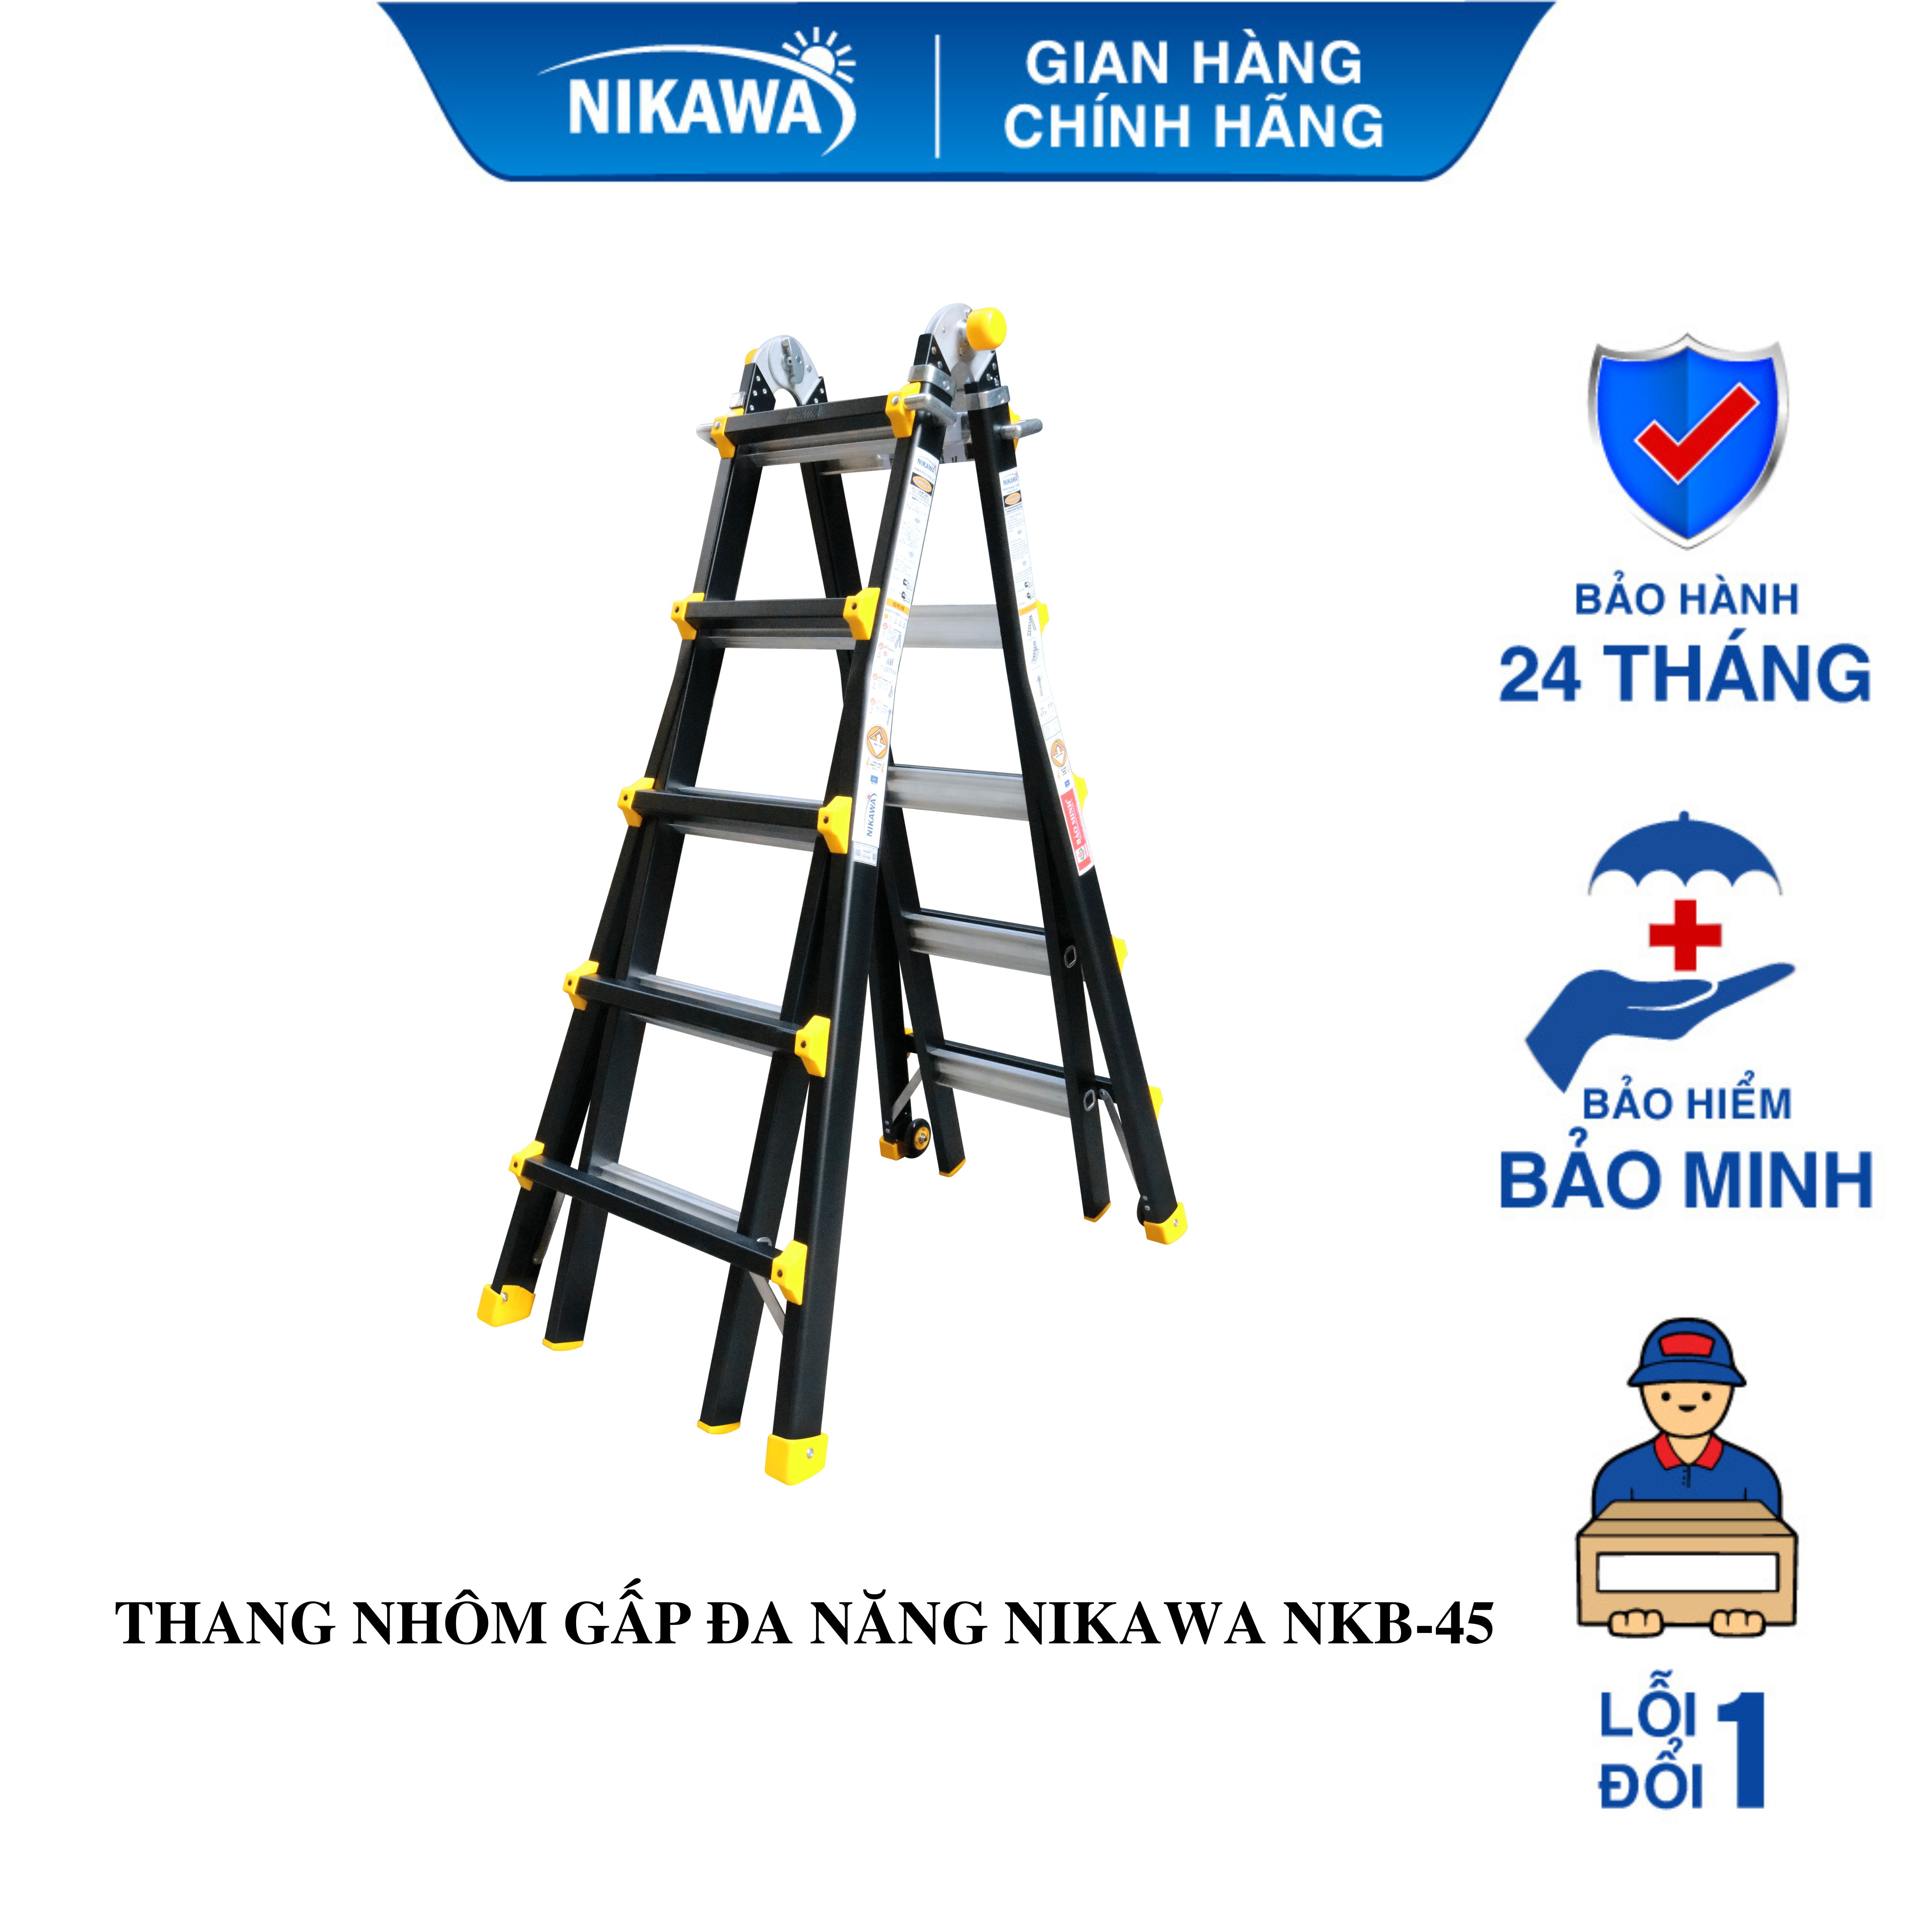 Thang Nhôm Gấp Đa Năng Nikawa NKB-44 - 4.15 mét - Màu Đen